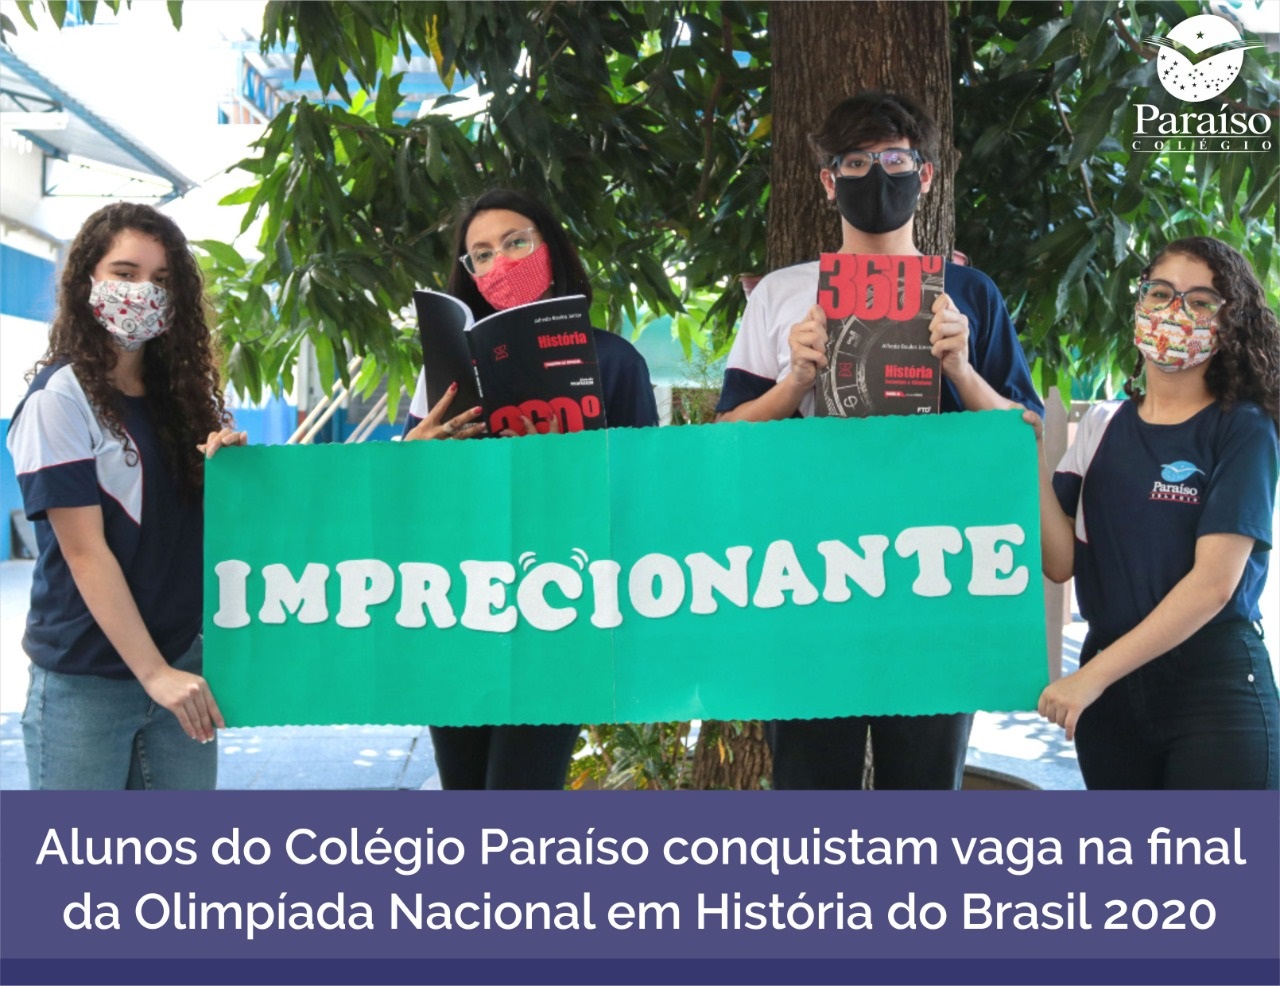 Alunos do Colégio Paraíso conquistam vaga na final da Olimpíada Nacional em História do Brasil 2020